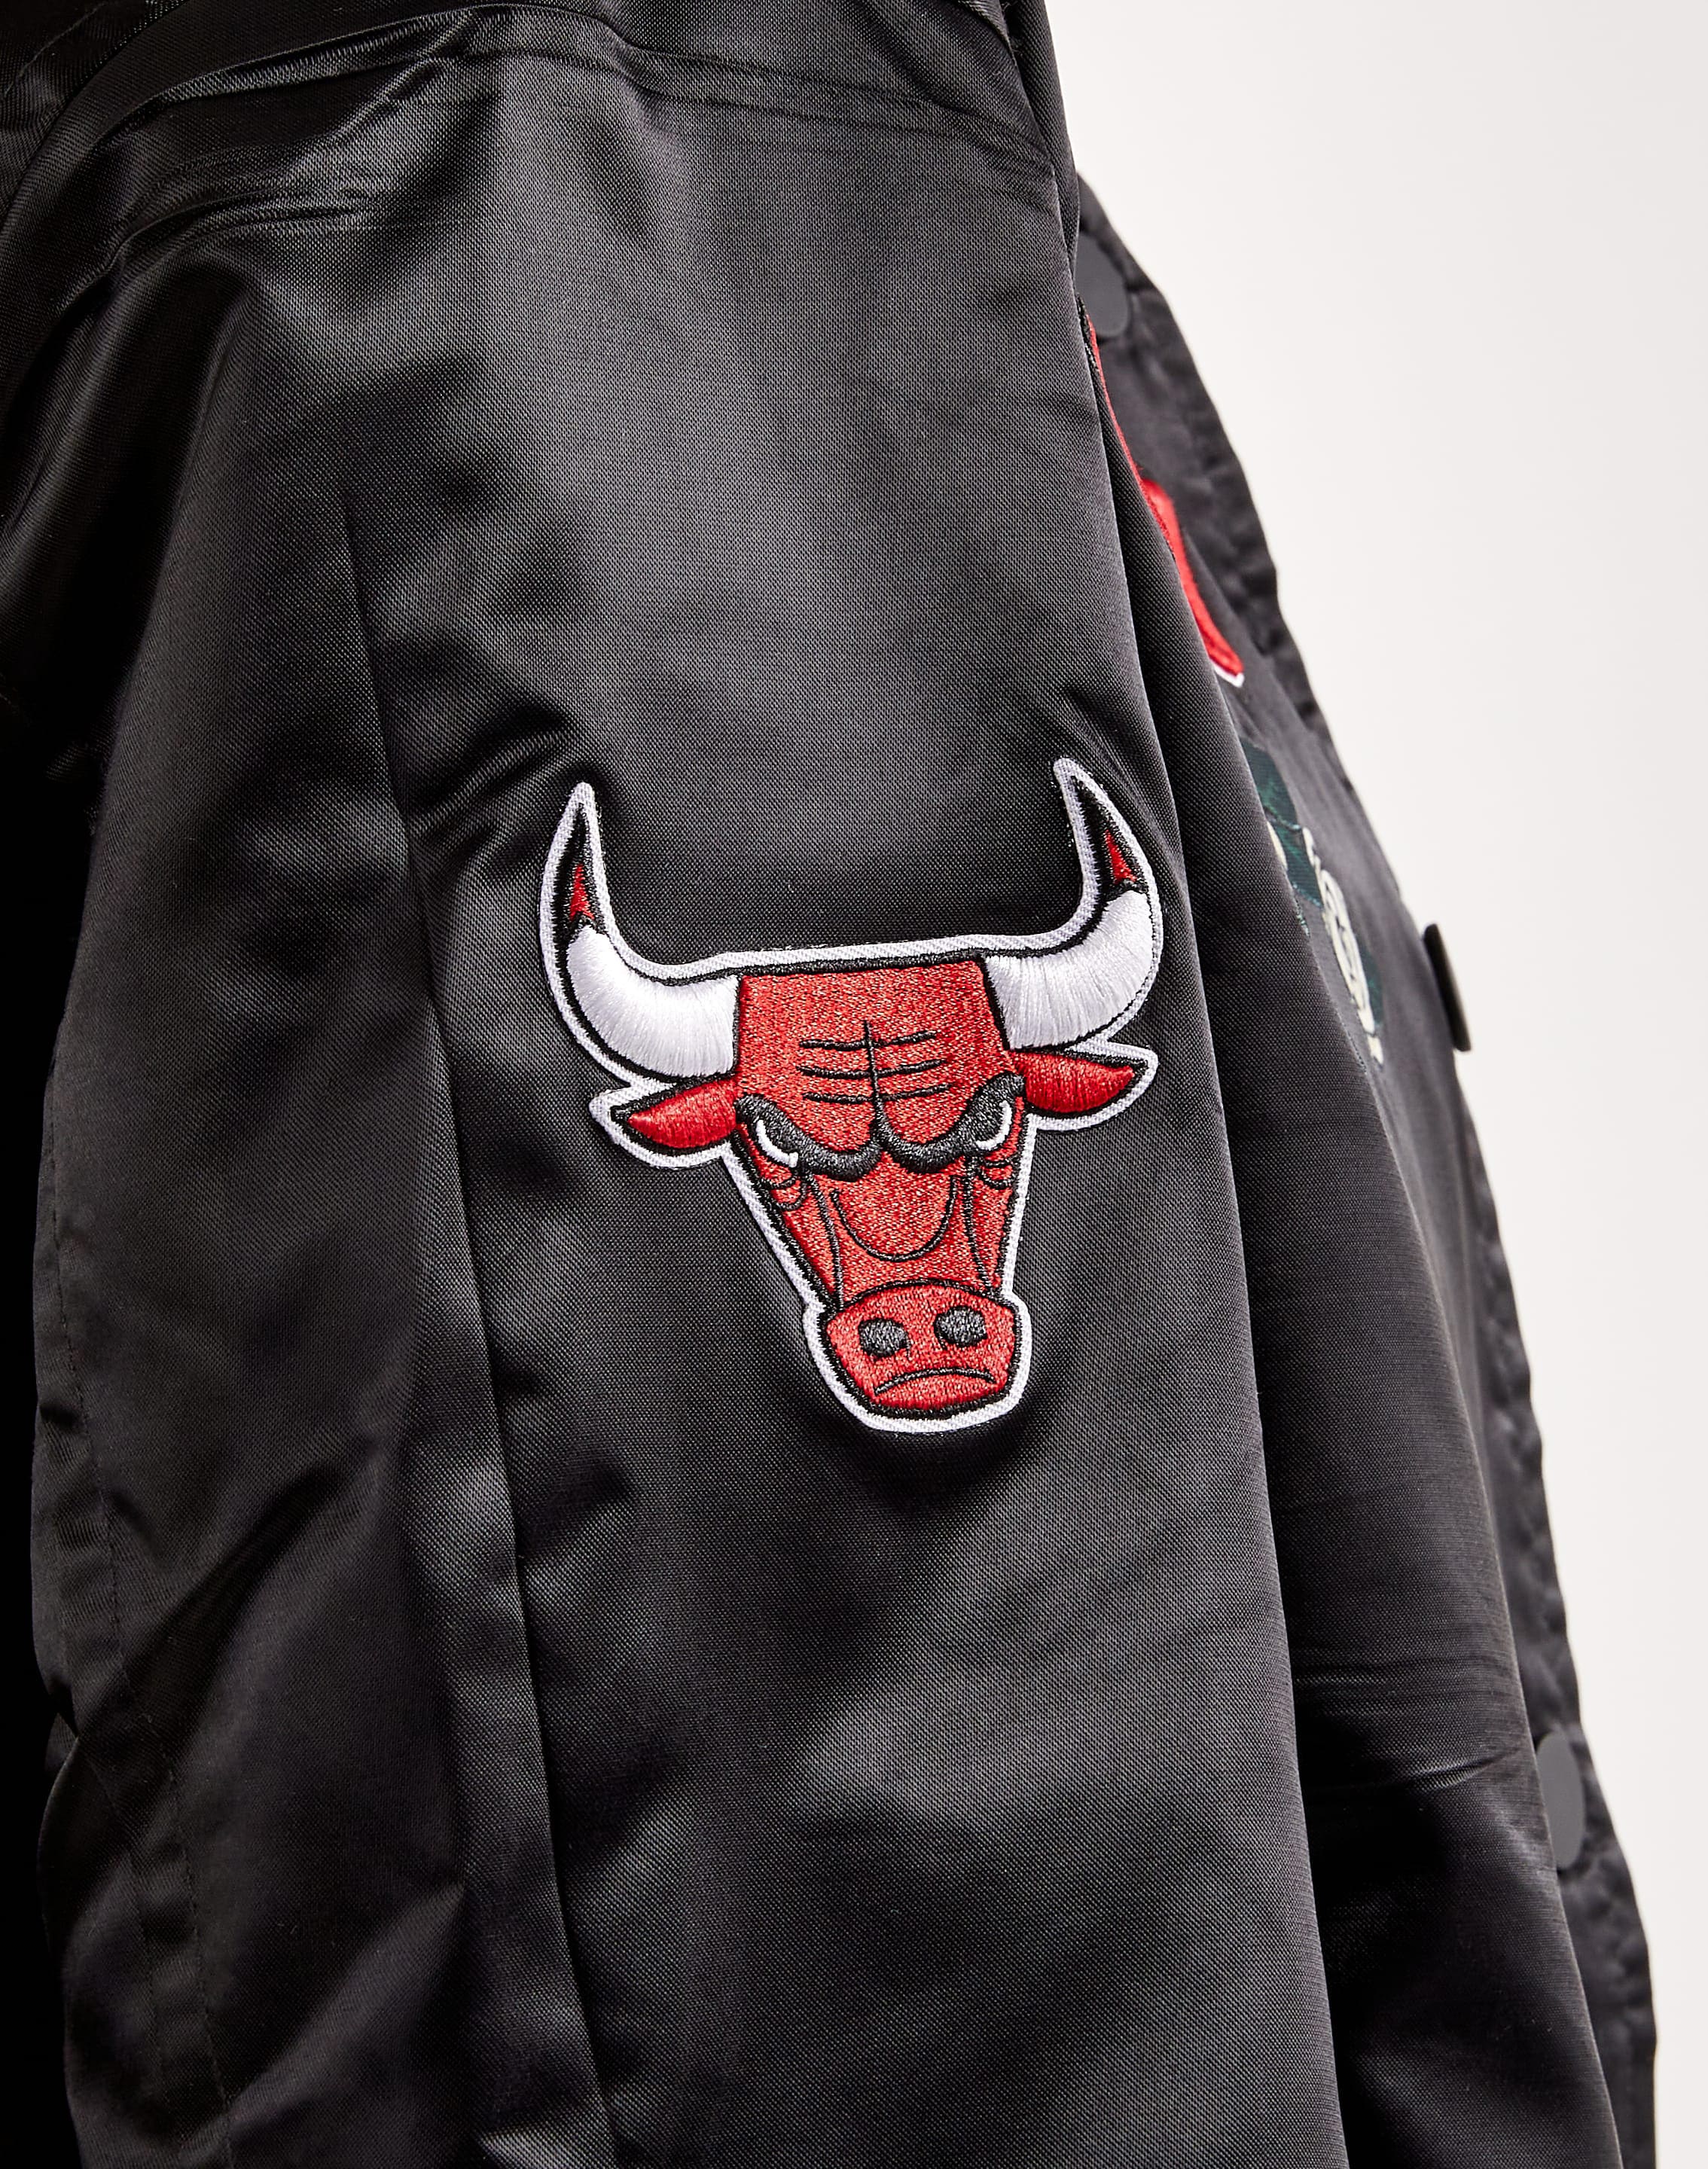 Bulls Black & Grey Varsity Jacket